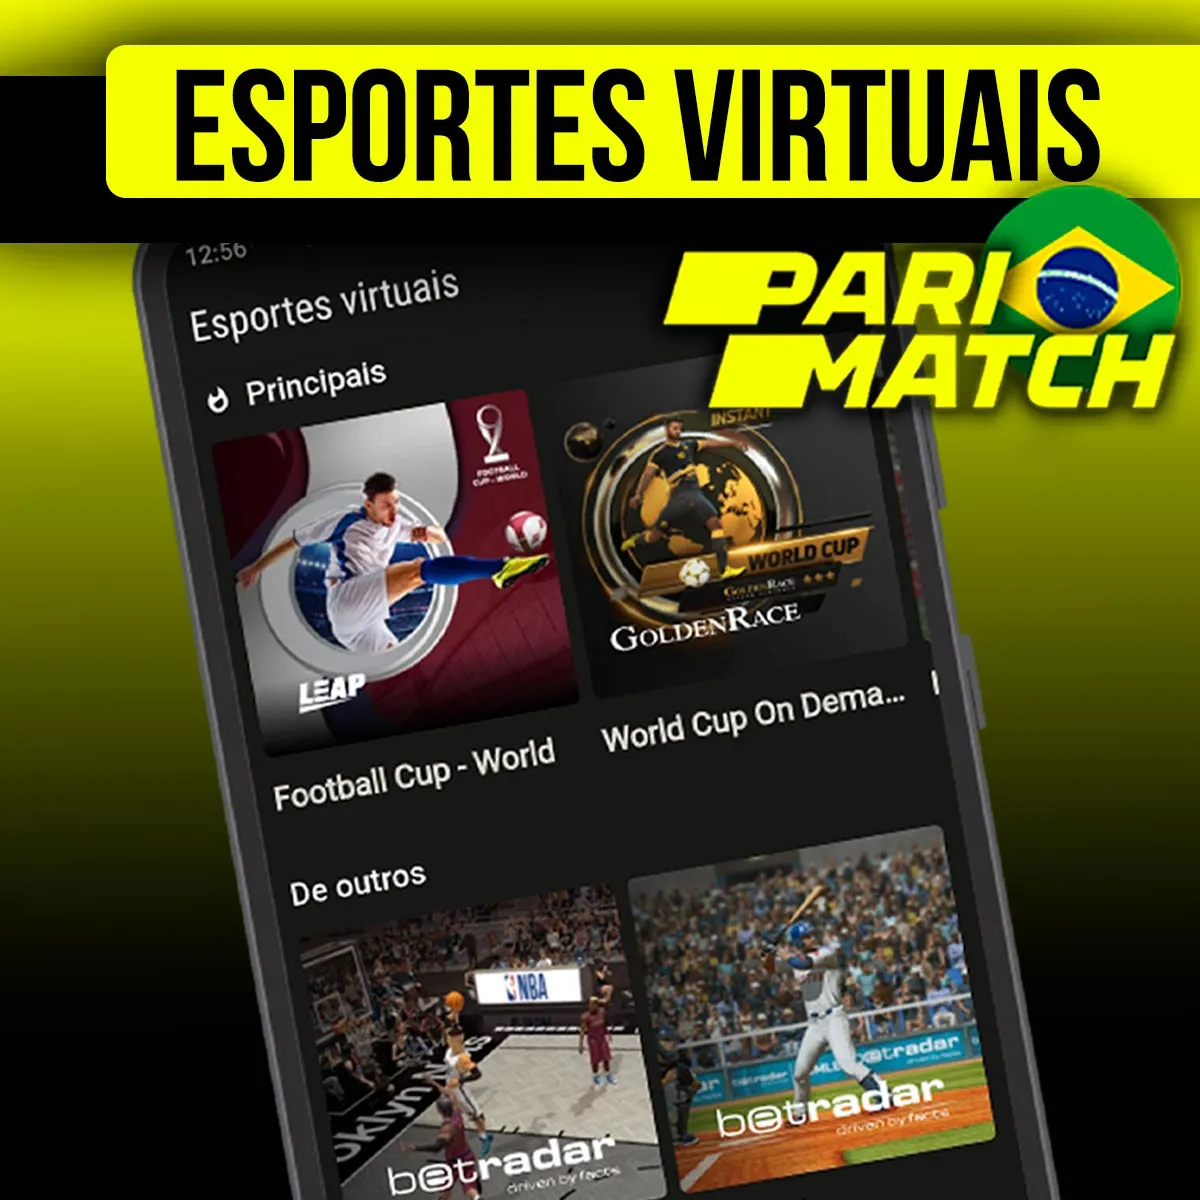 Esportes virtuais no cassino da casa de apostas Parimatch Brasil